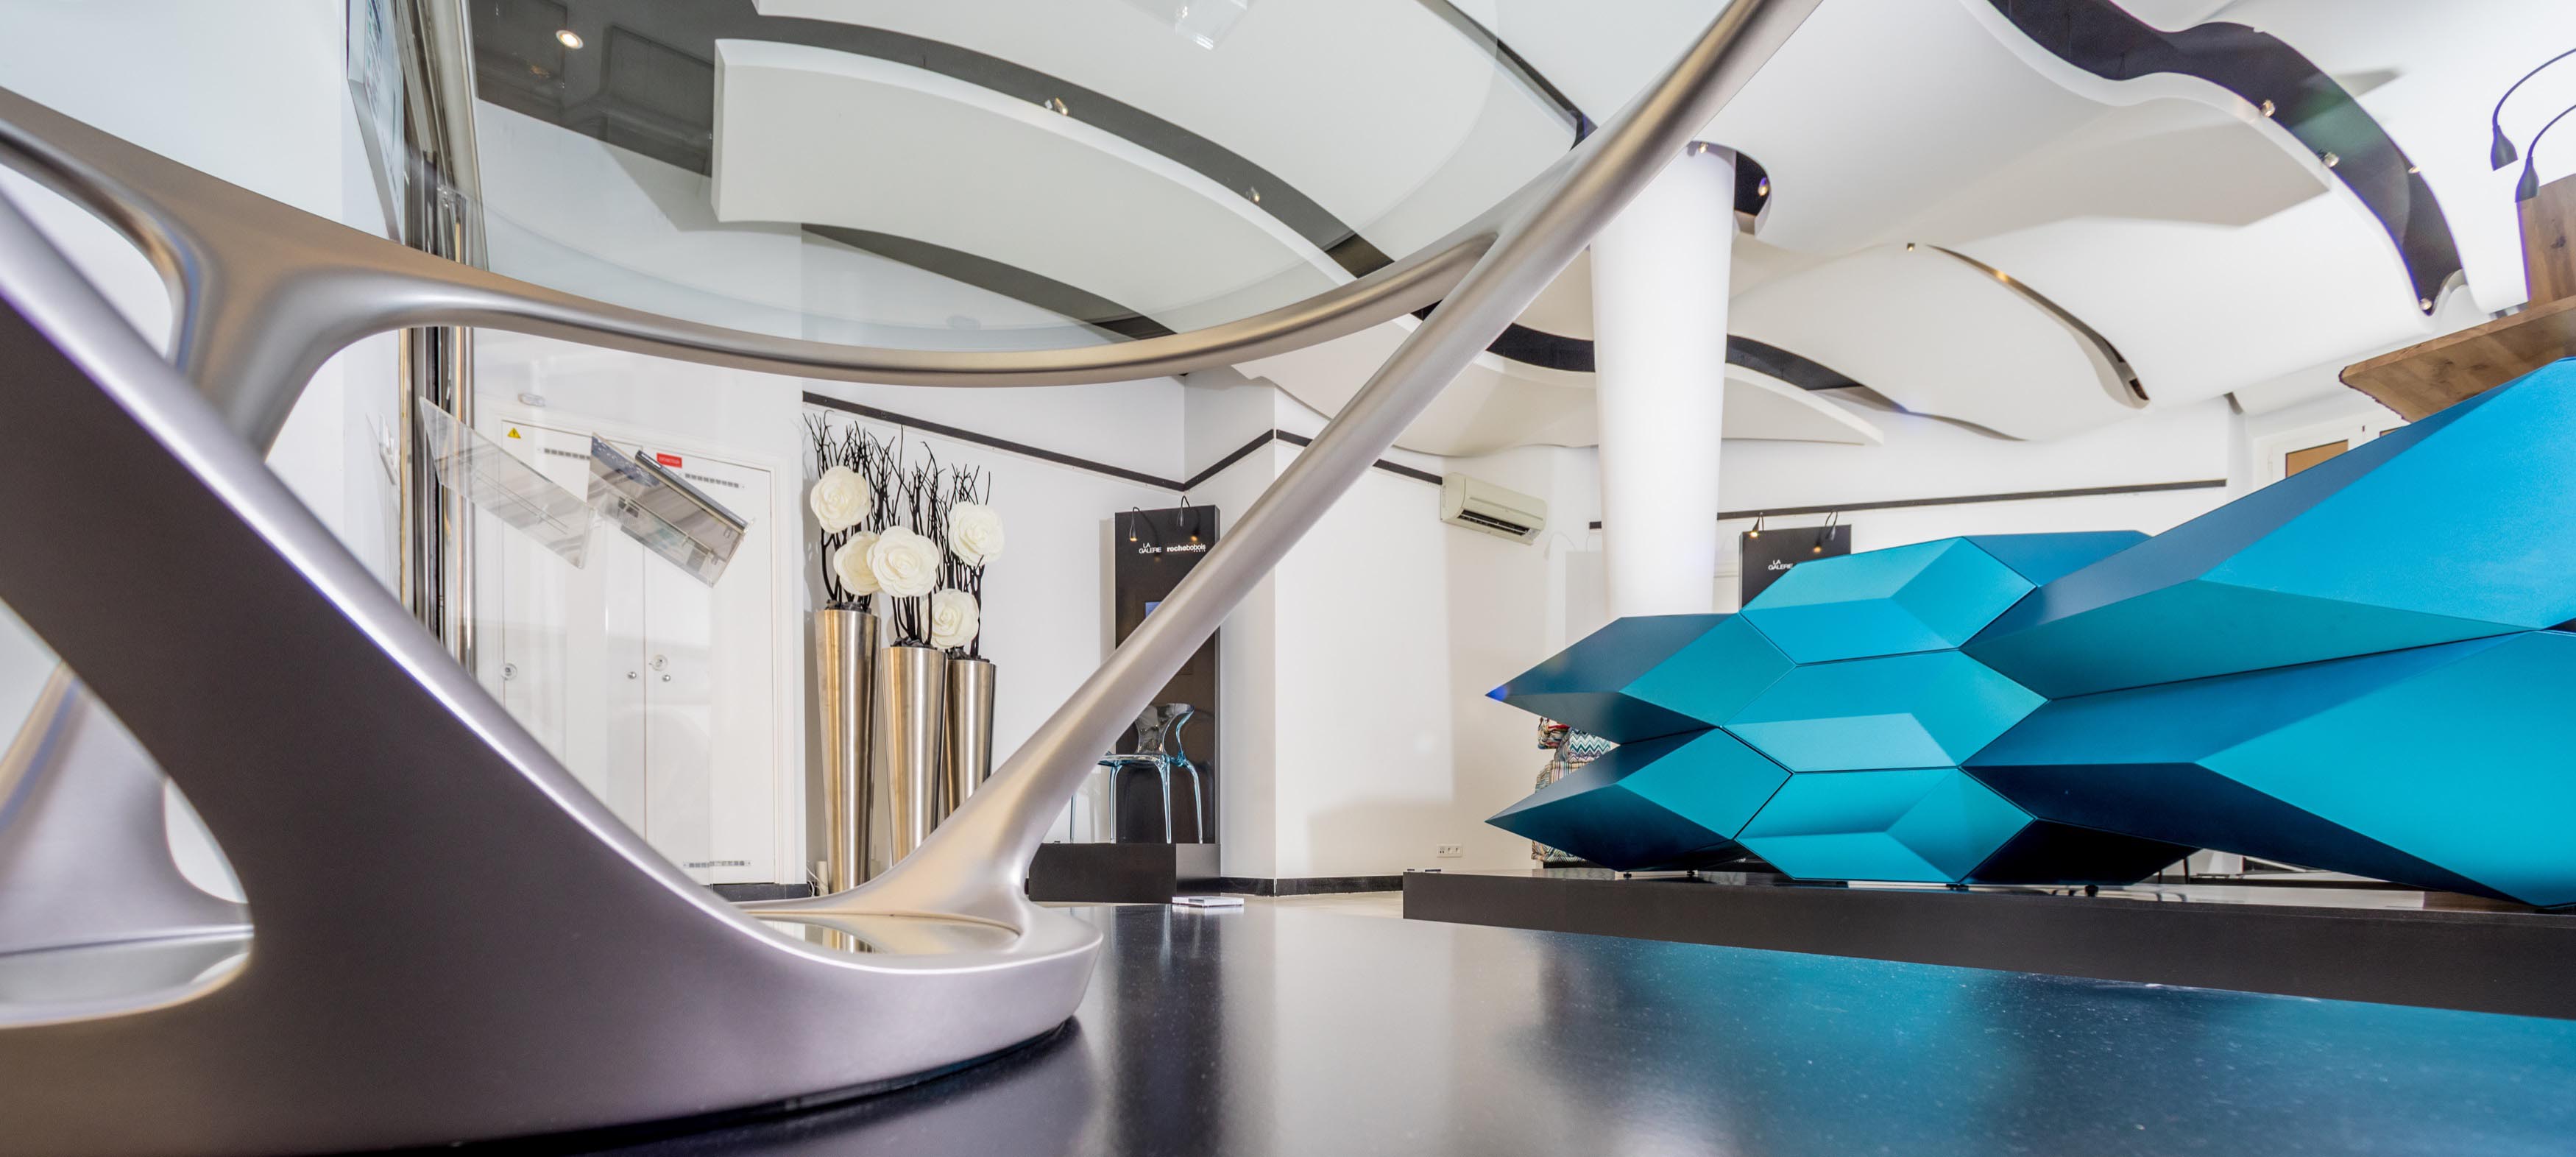 Galerie Roche Bobois Principato di Monaco: il nuovo concept store dedicato alla creatività